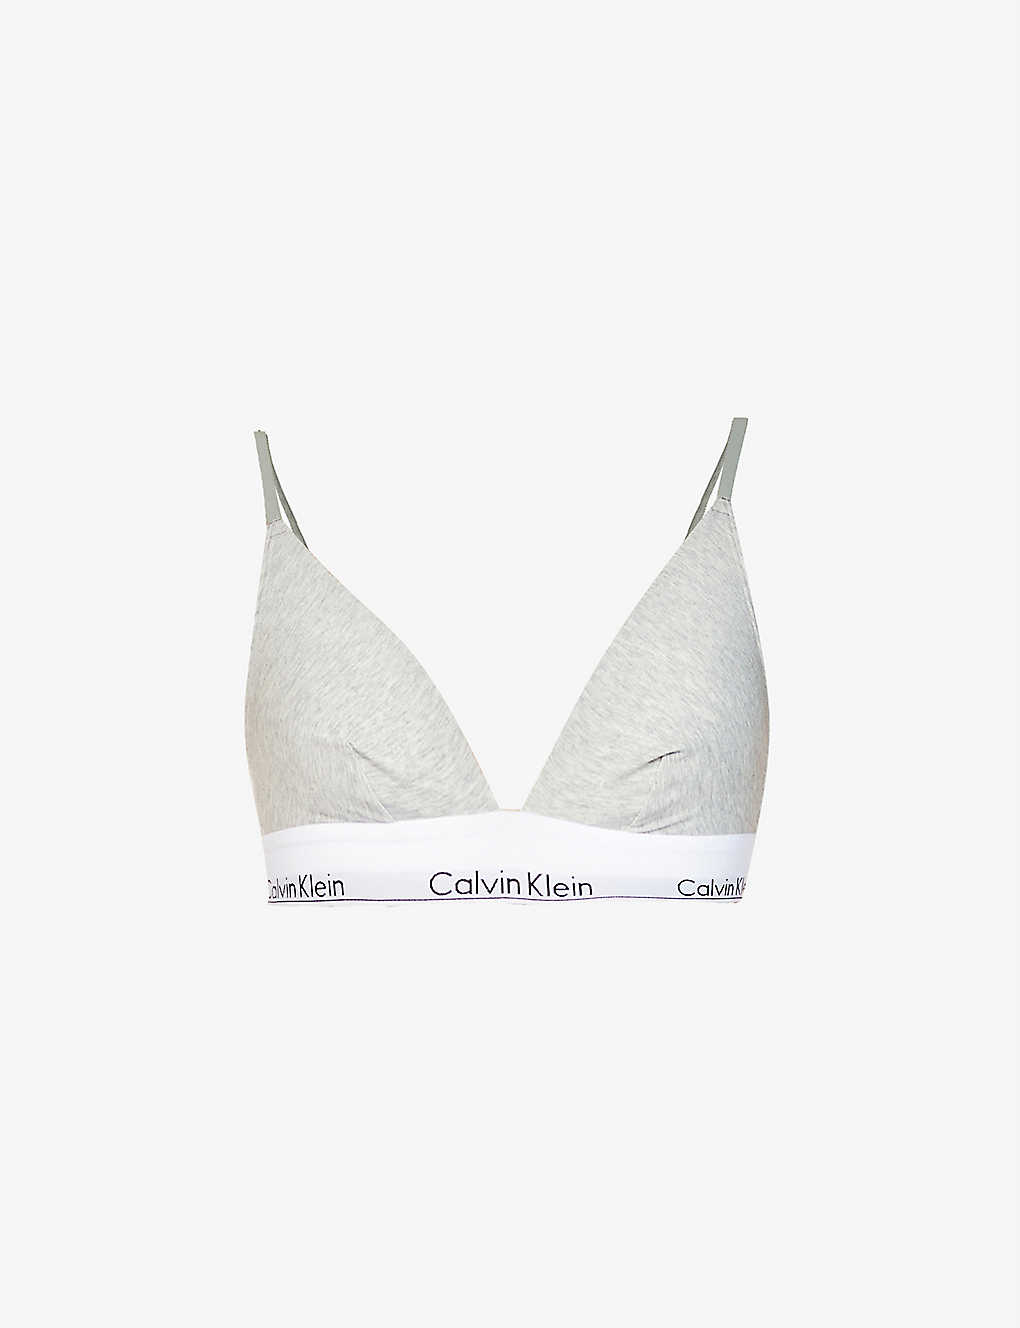 Shop Calvin Klein Women's Grey Heather Modern Triangle Stretch Cotton-blend Bra